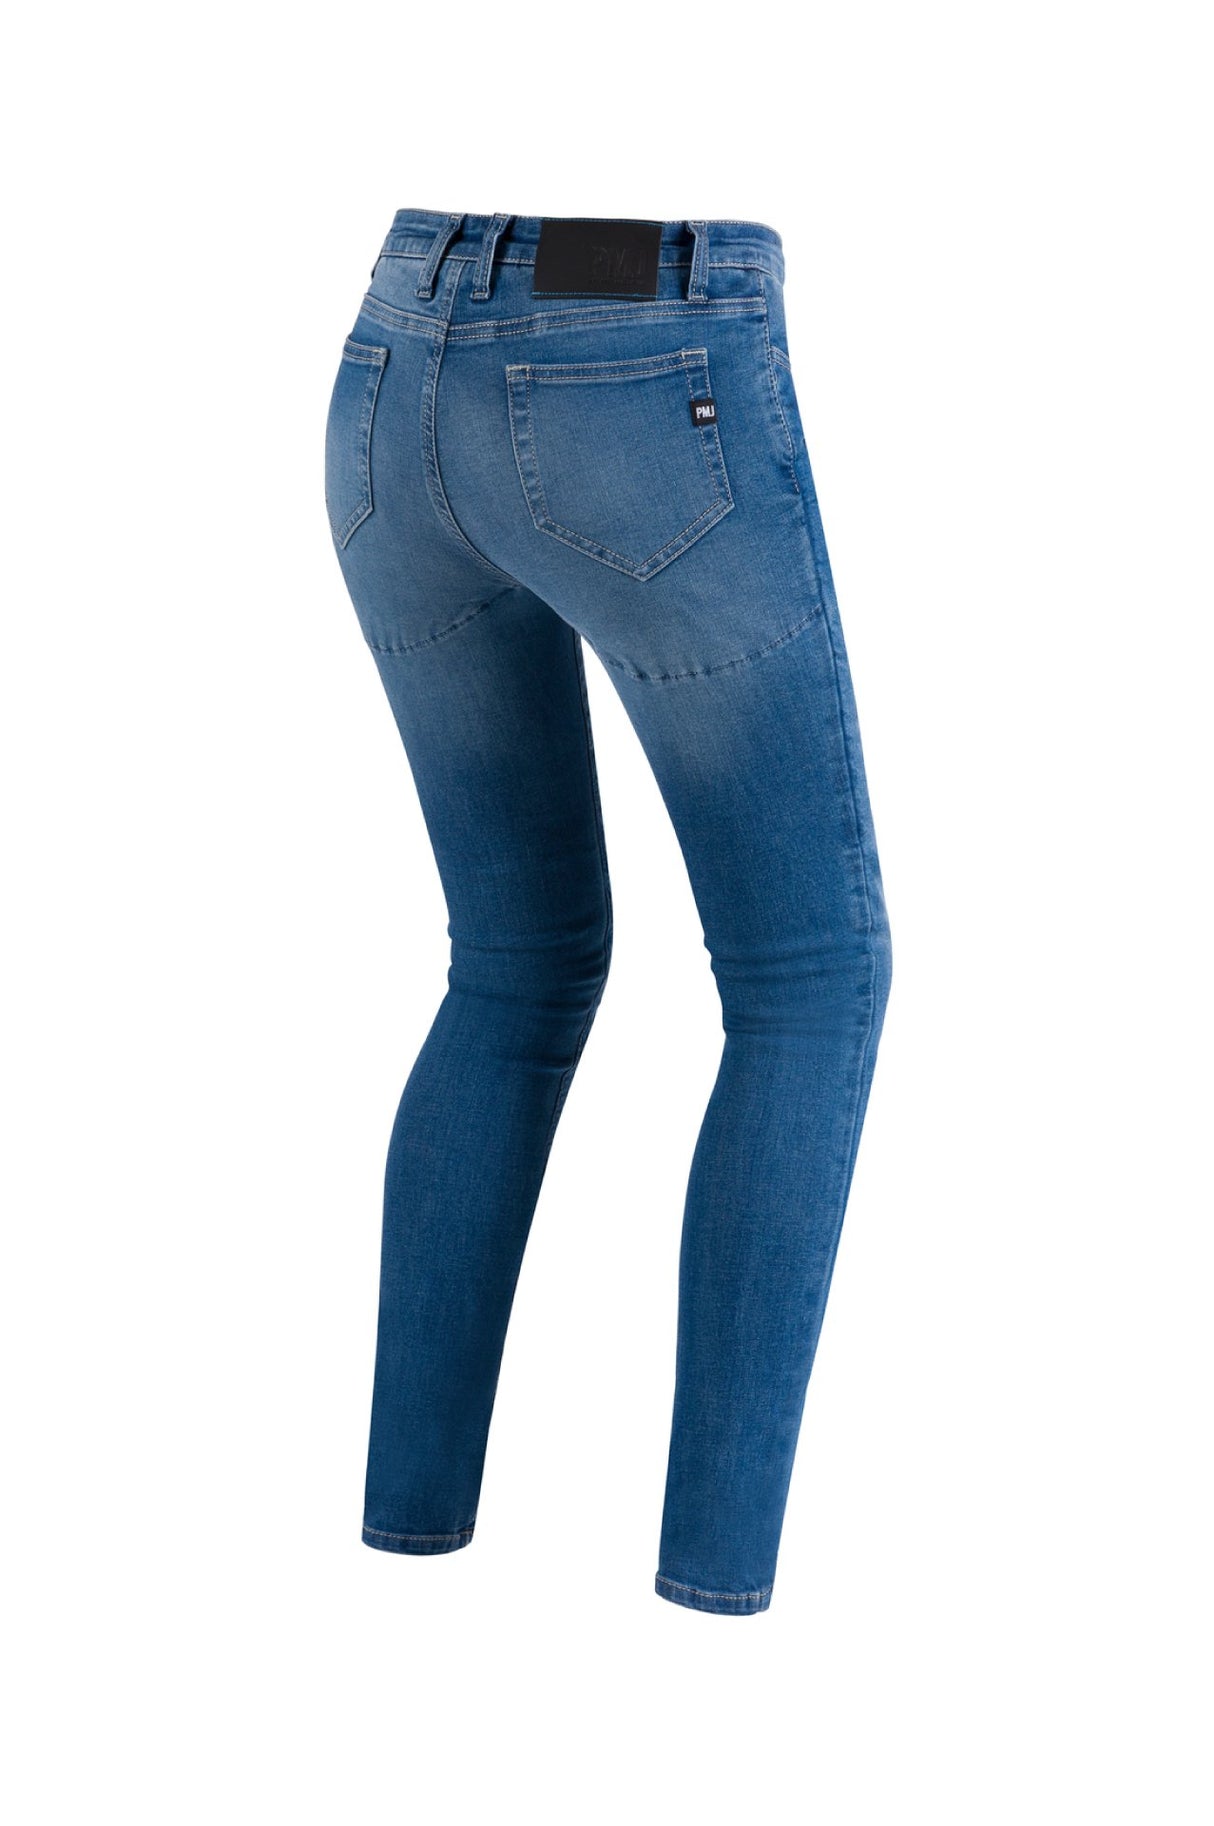 PMJ Skinny Ladies Jeans - Light Blue Unico